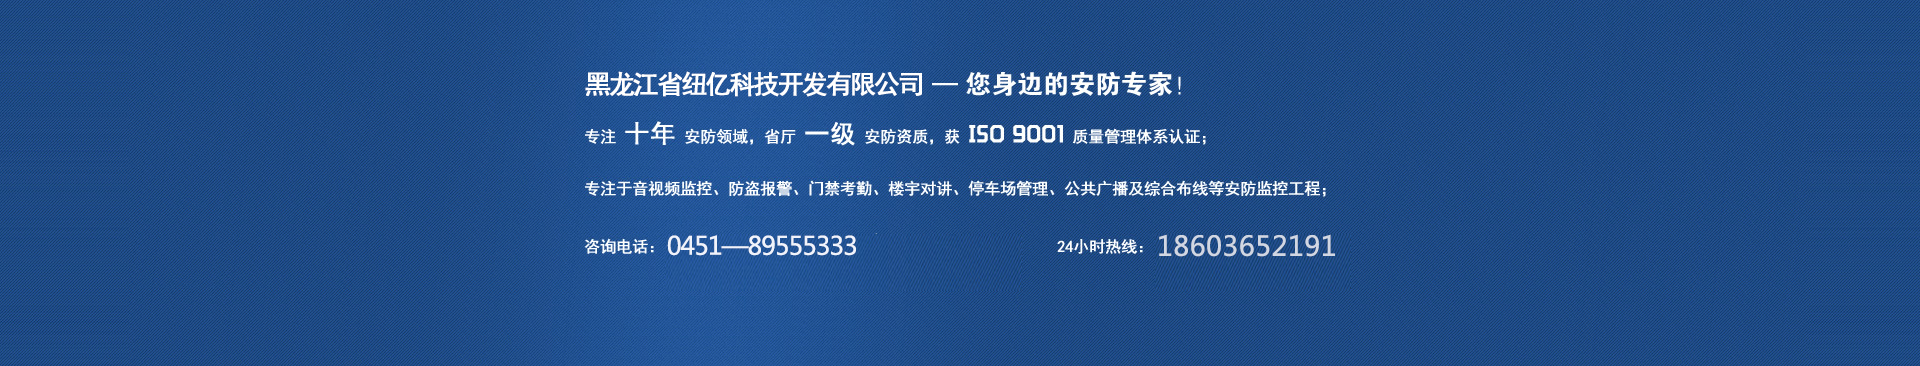 黑龙江省纽亿科技开发有限公司,您身边的安防专家!